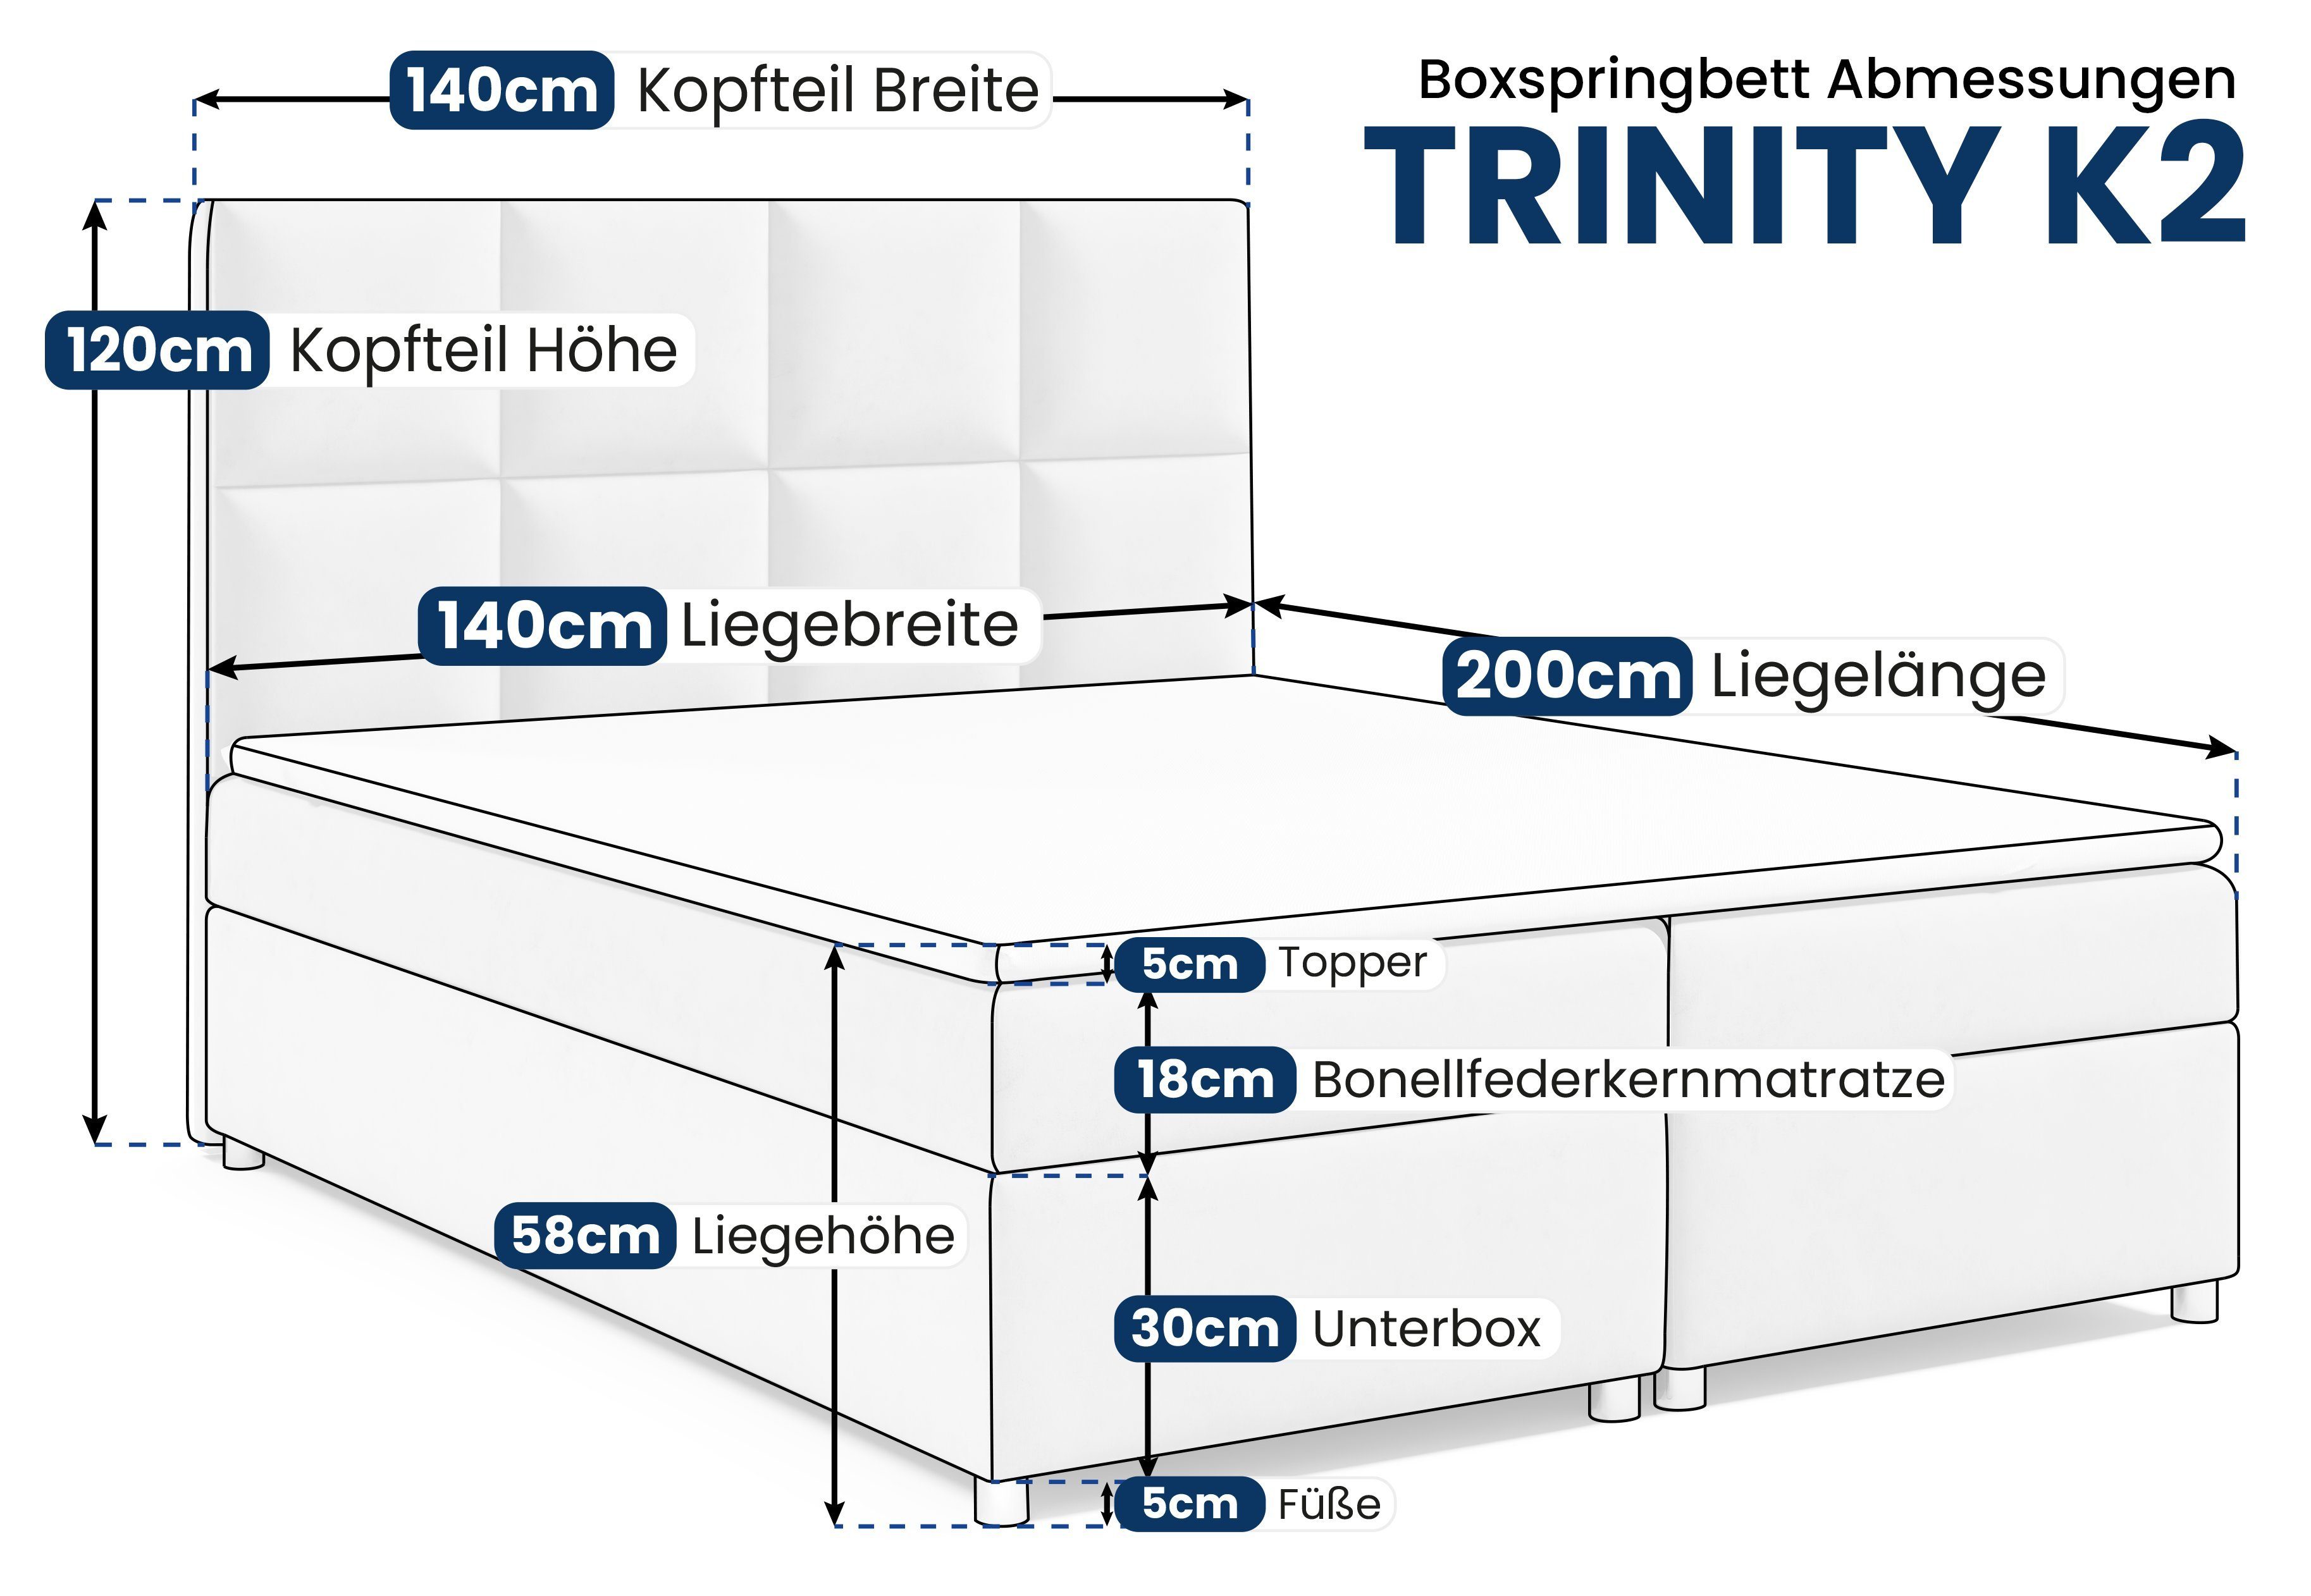 Best for Home Boxspringbett Trinity K2, Mintgrün Topper mit Bettkasten und